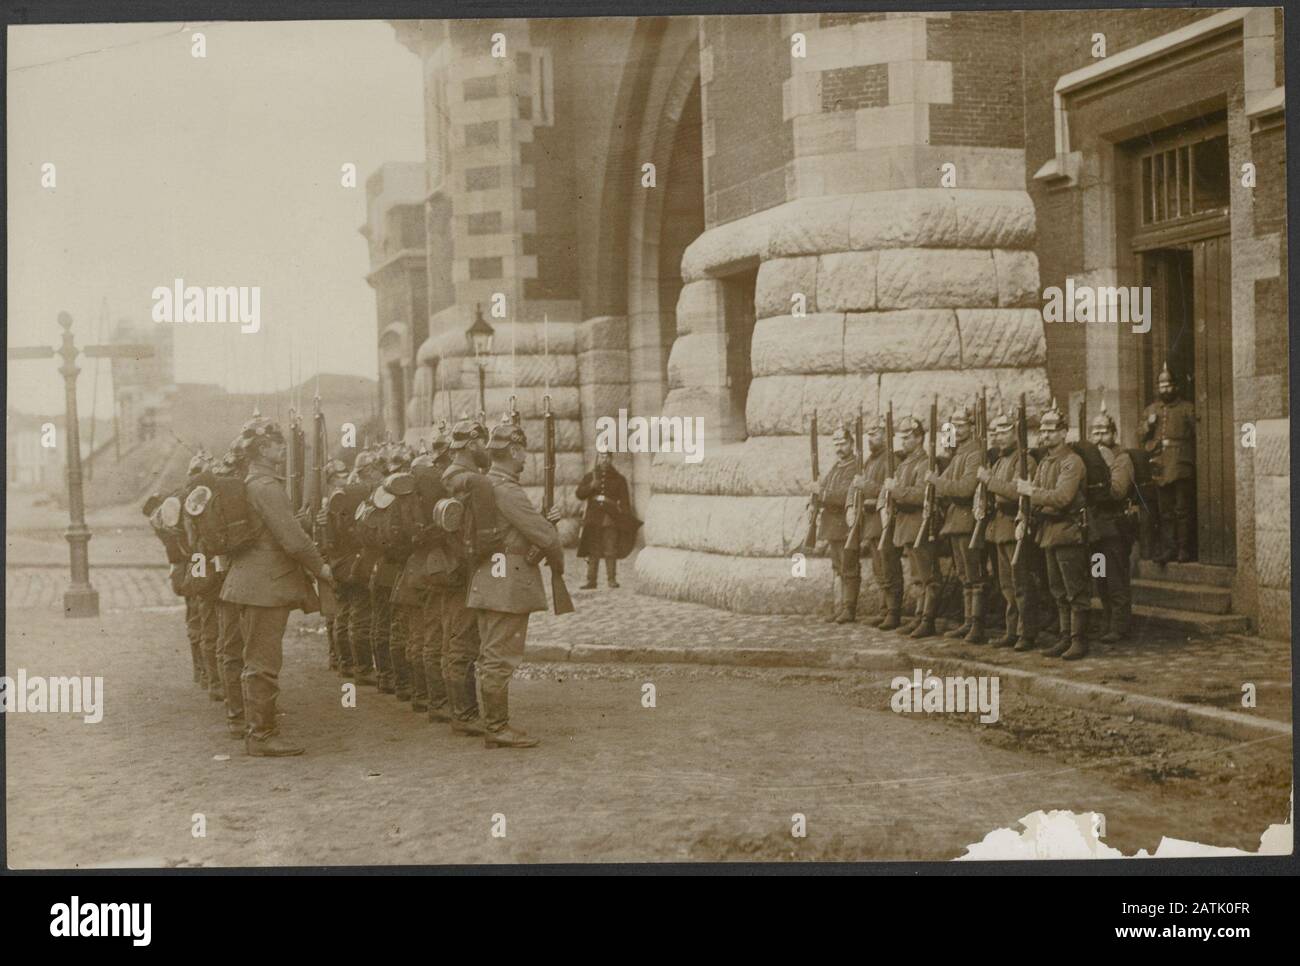 Description: Les soldats allemands présentent des armes avant le [[::: Torhoutse Gate | Turnhoutse port]] Forteresse Anvers Date: 1914 lieu: Anvers, Belgique, Allemagne, Turnhout Banque D'Images